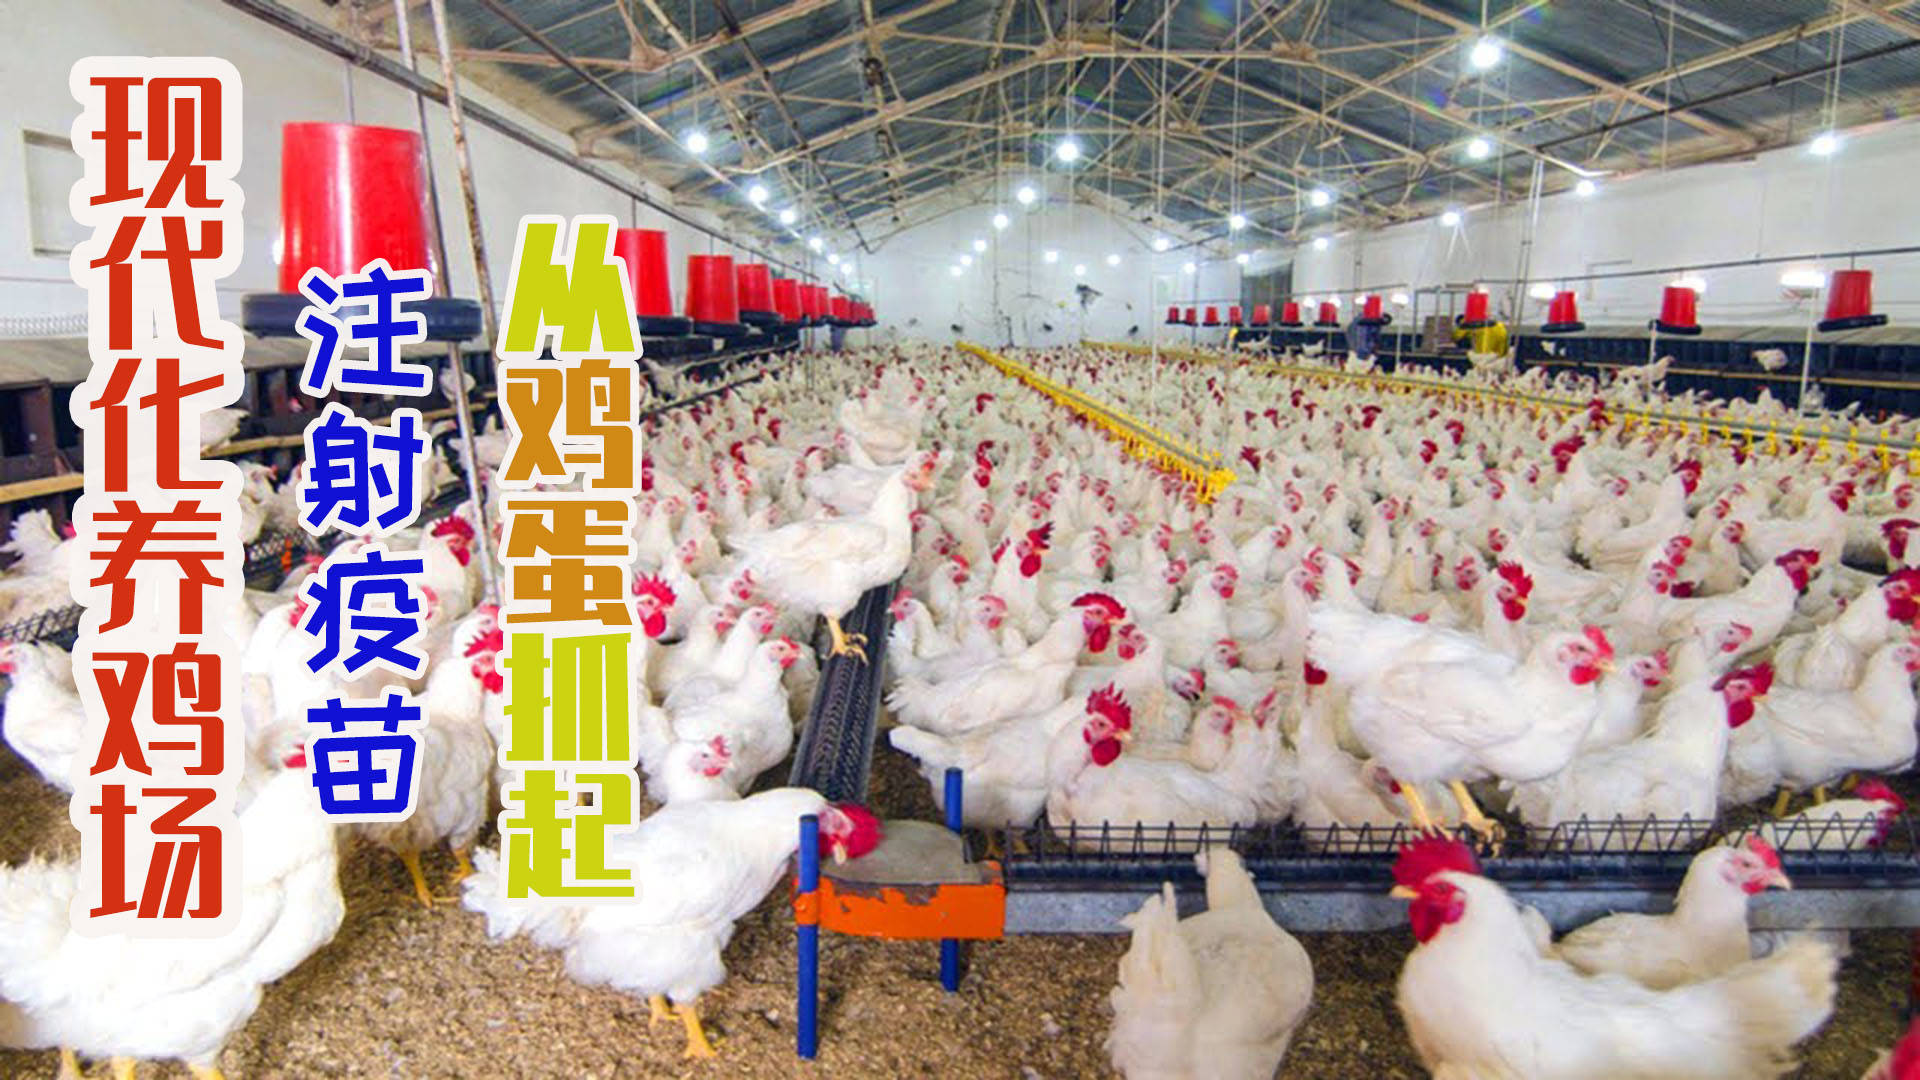 美国大型现代化养鸡场为鸡蛋注射疫苗保护鸡肉健康